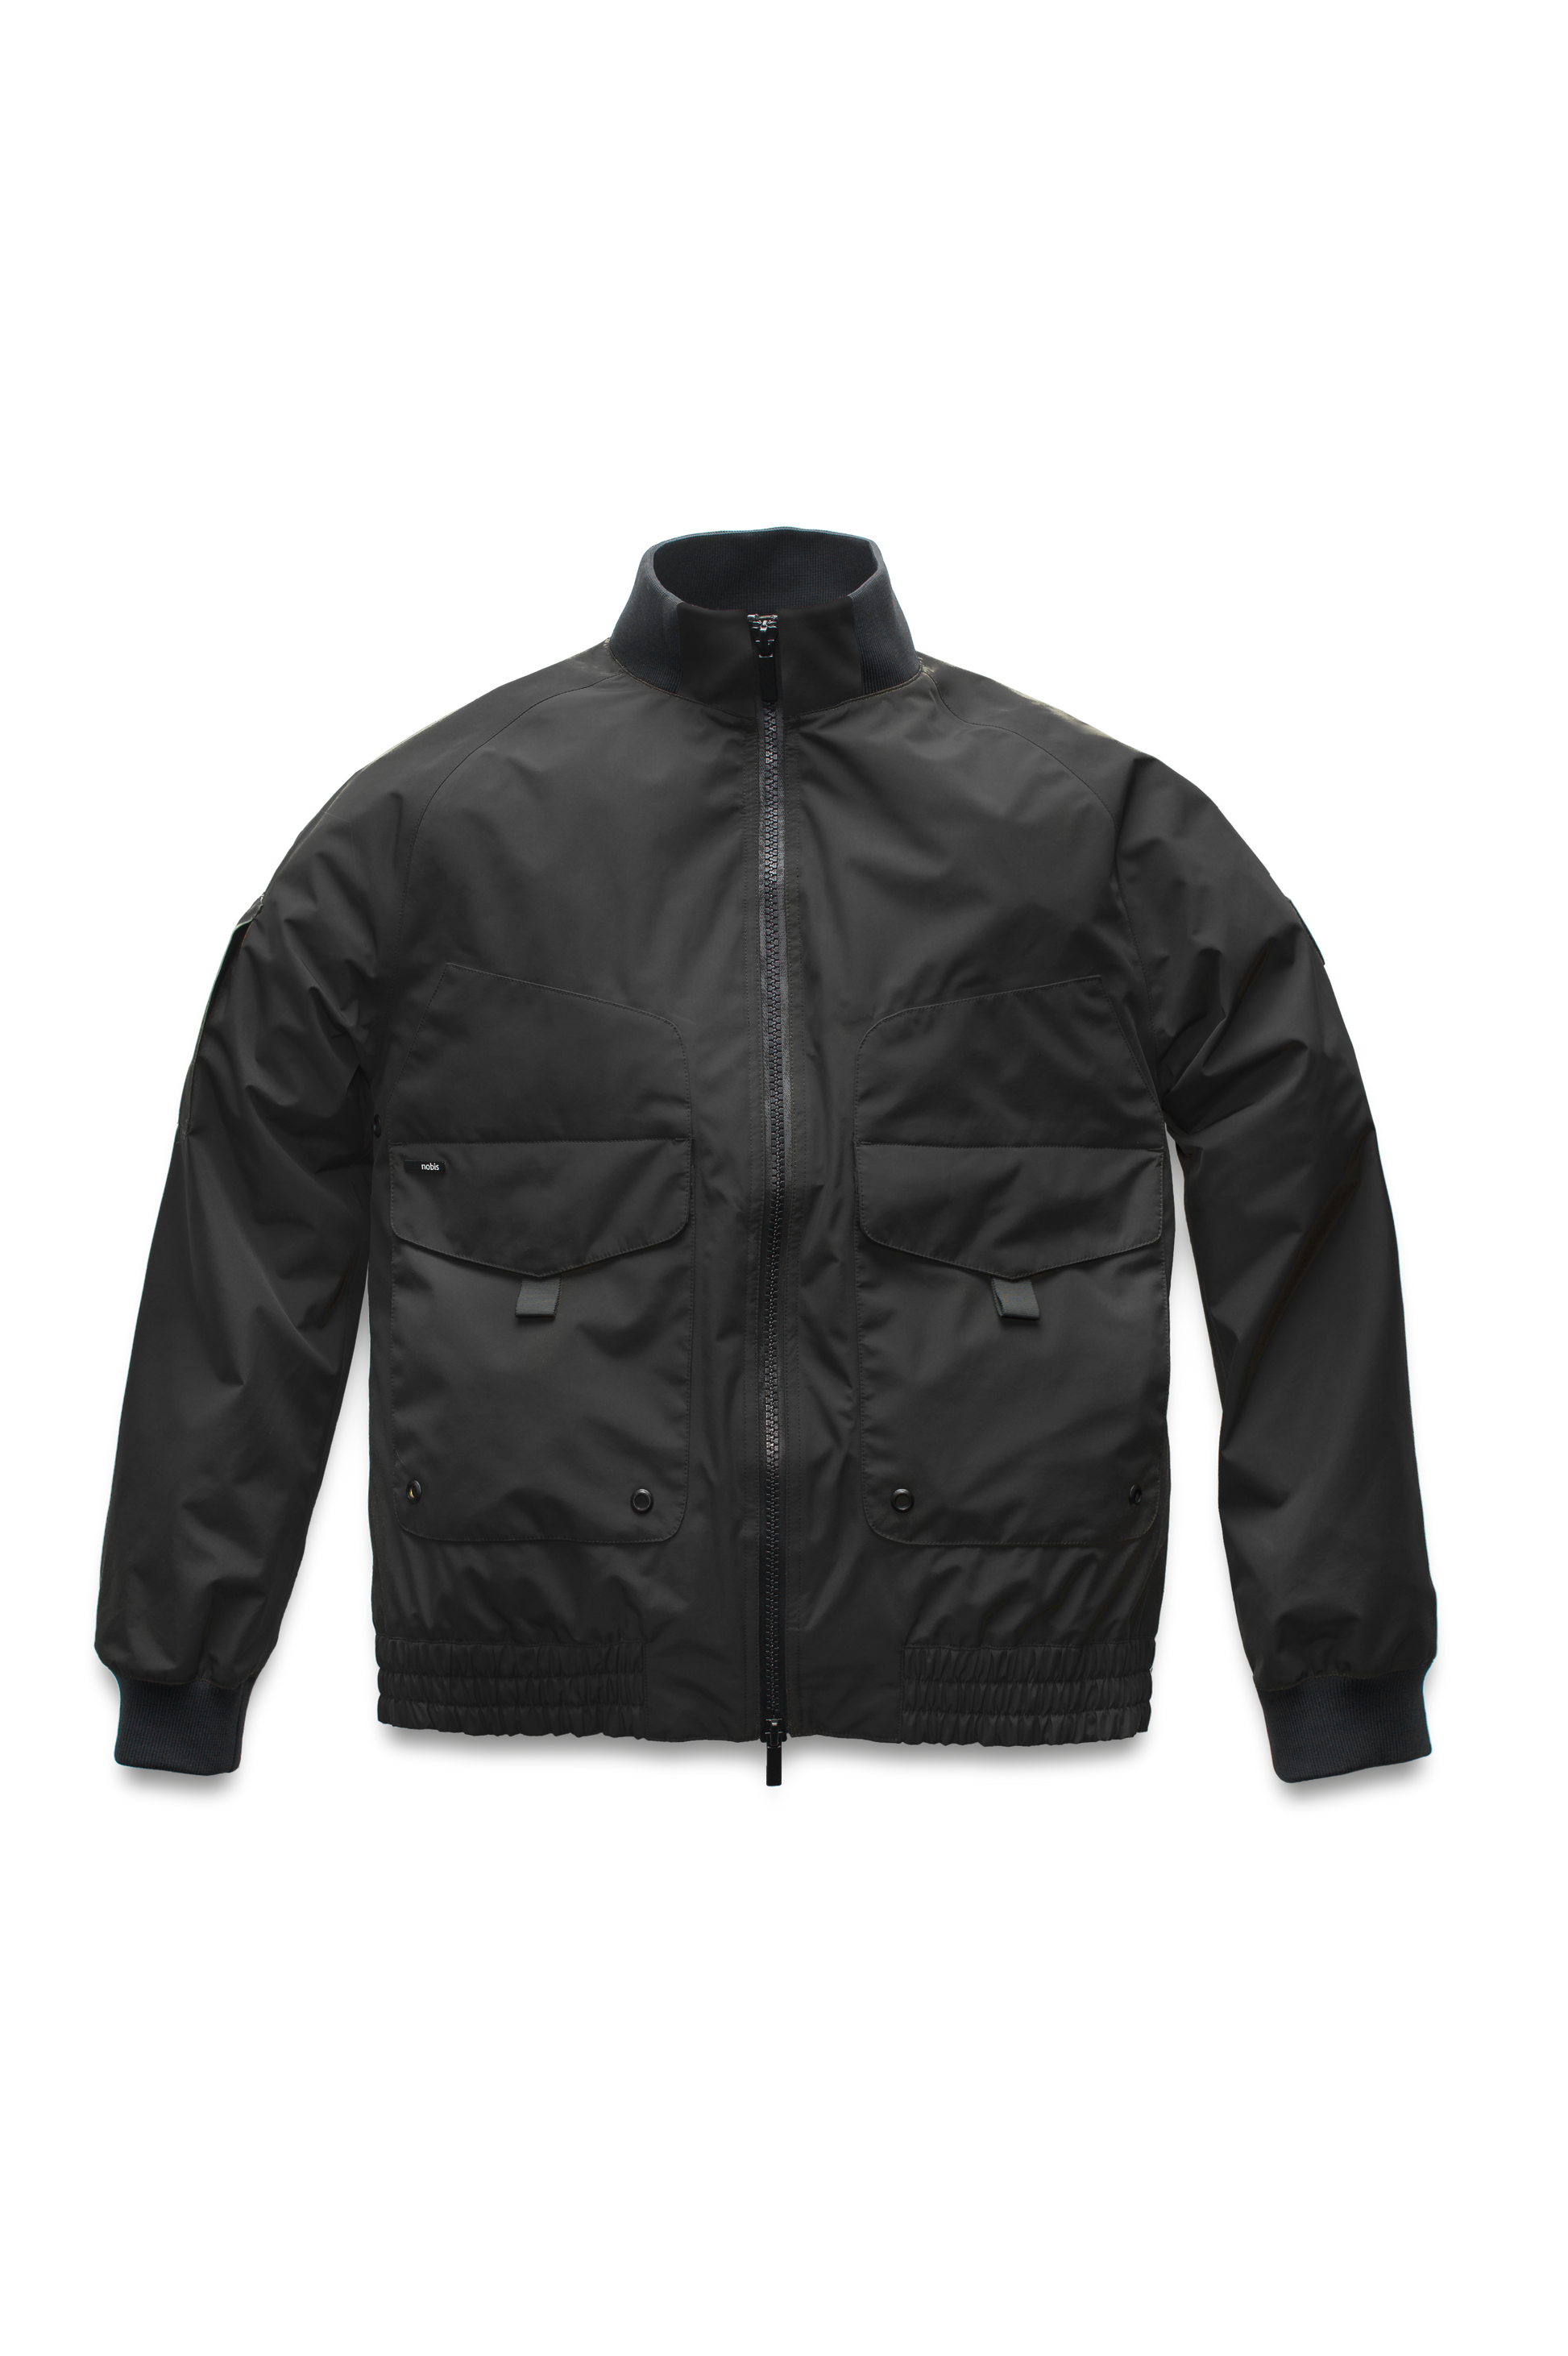 Men's hip length waterproof bomber jacket with 2-way zipper in Black